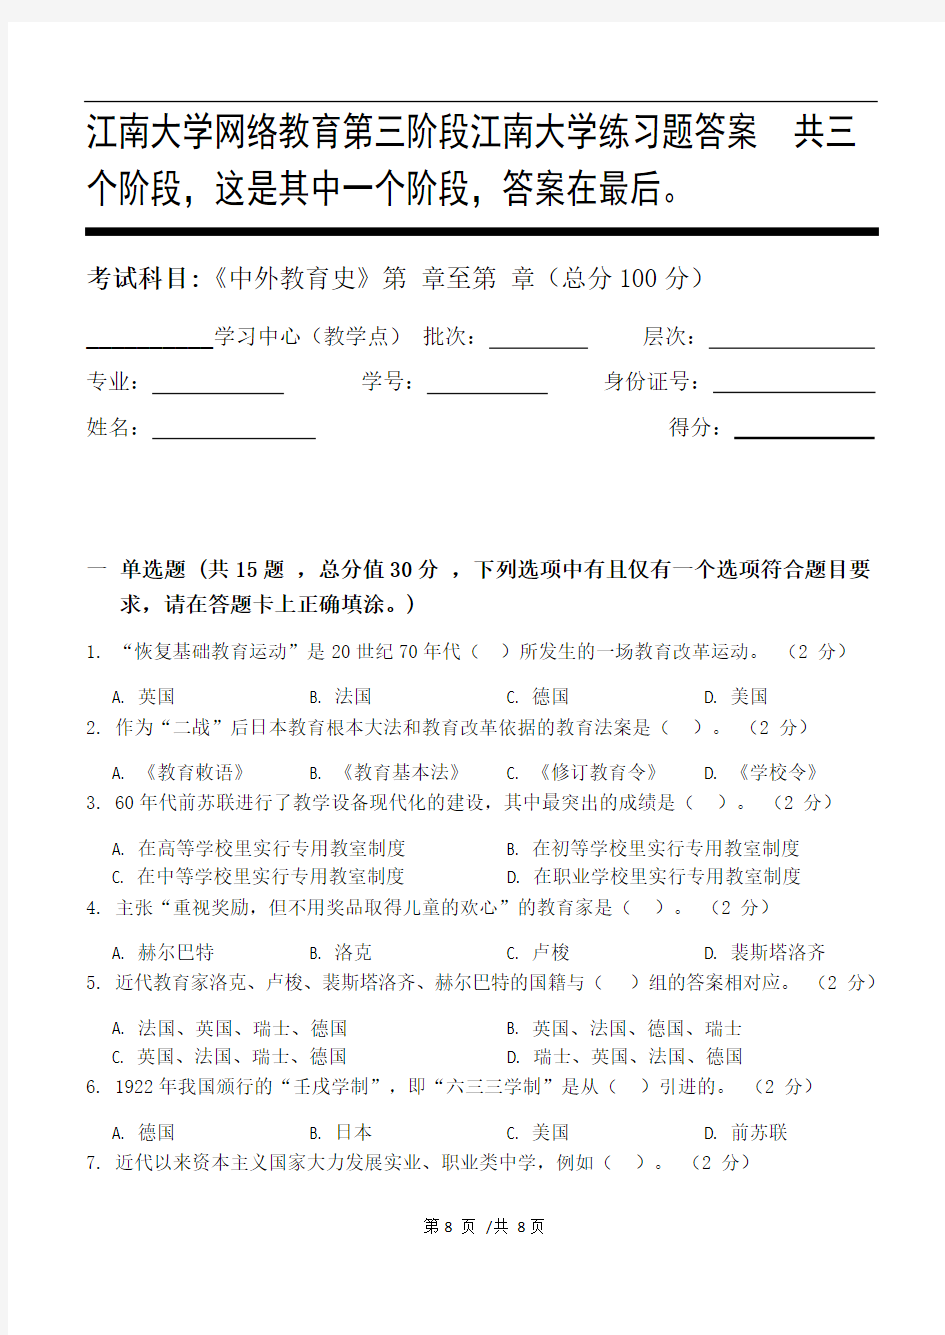 中外教育史第3阶段江南大学练习题答案  共三个阶段,这是其中一个阶段,答案在最后。